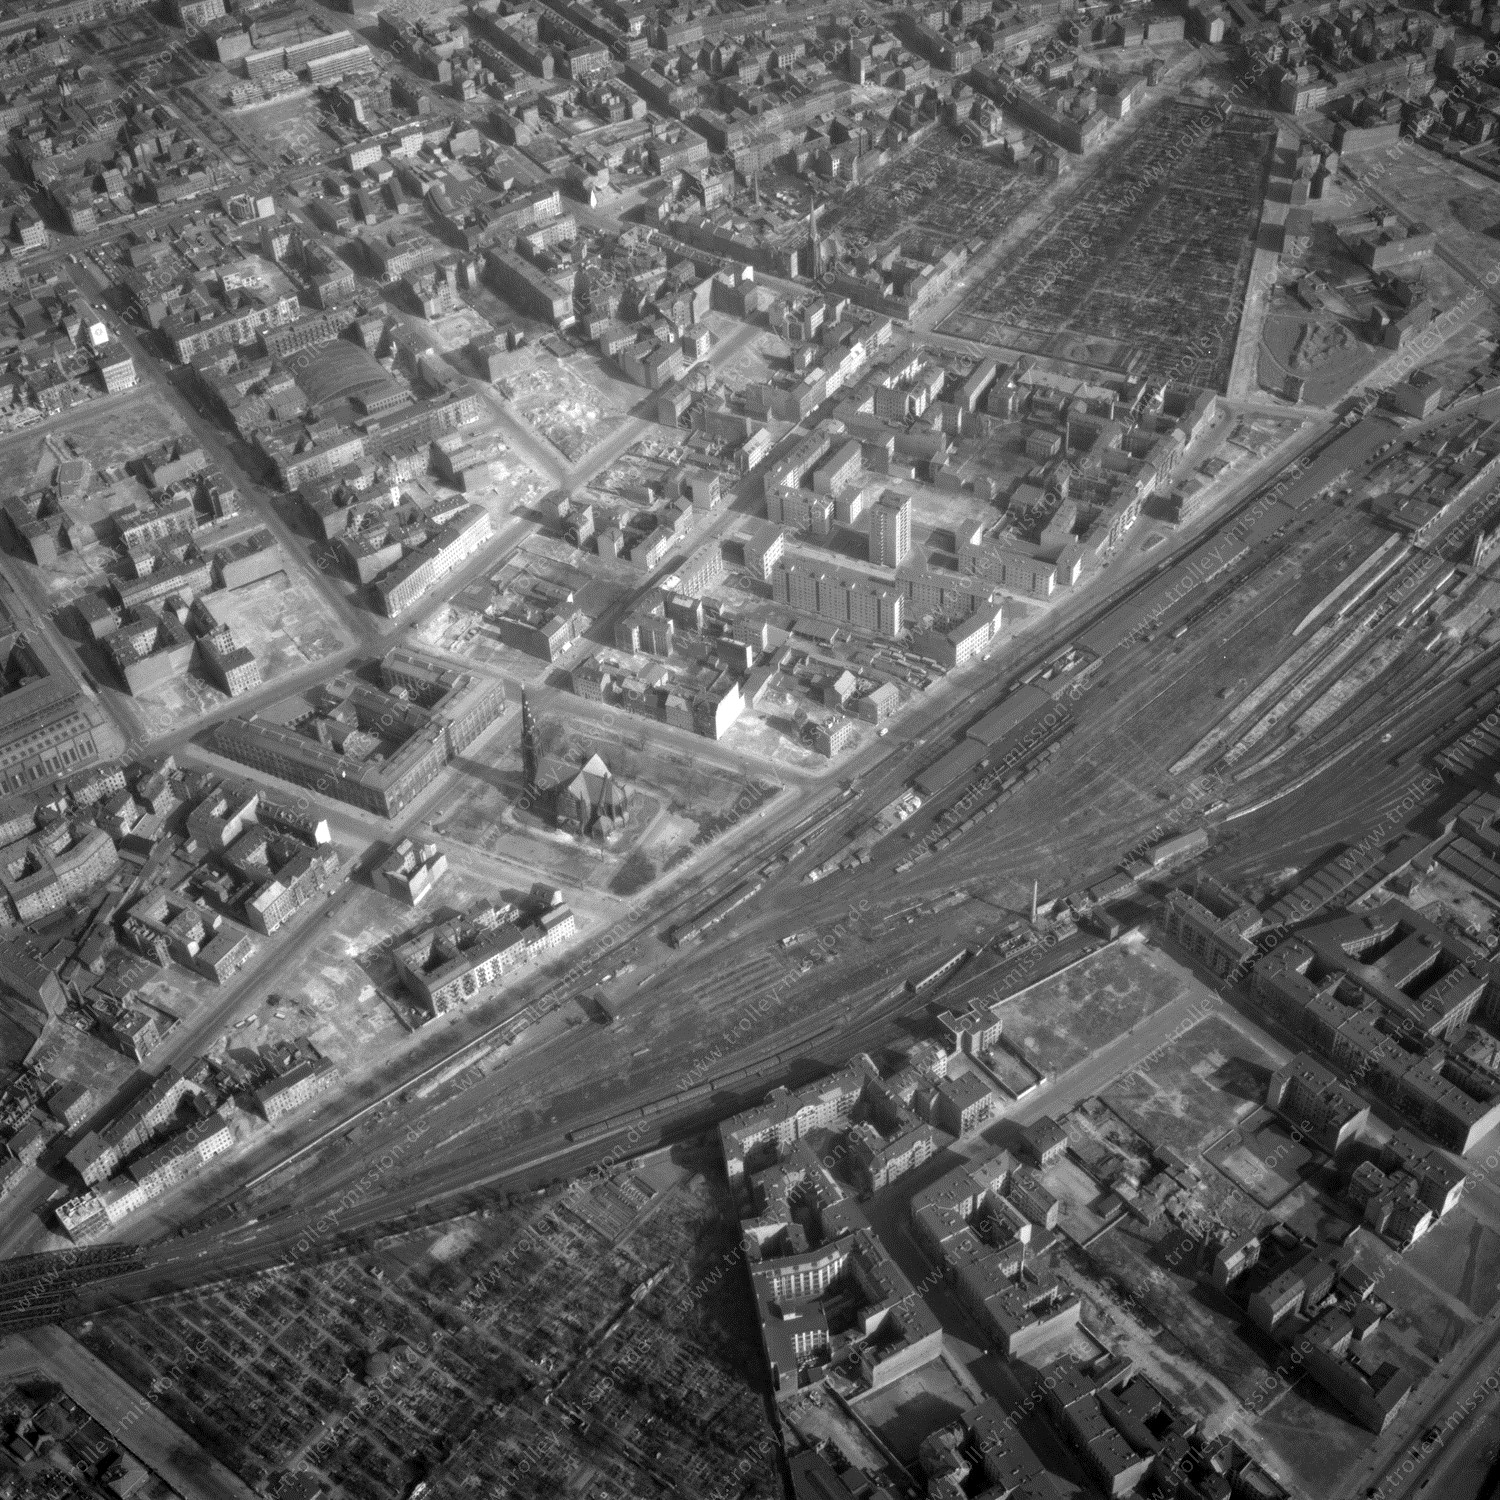 Alte Fotos und Luftbilder von Berlin - Luftbildaufnahme Nr. 03 - Historische Luftaufnahmen von West-Berlin aus dem Jahr 1954 - Flugstrecke Romeo